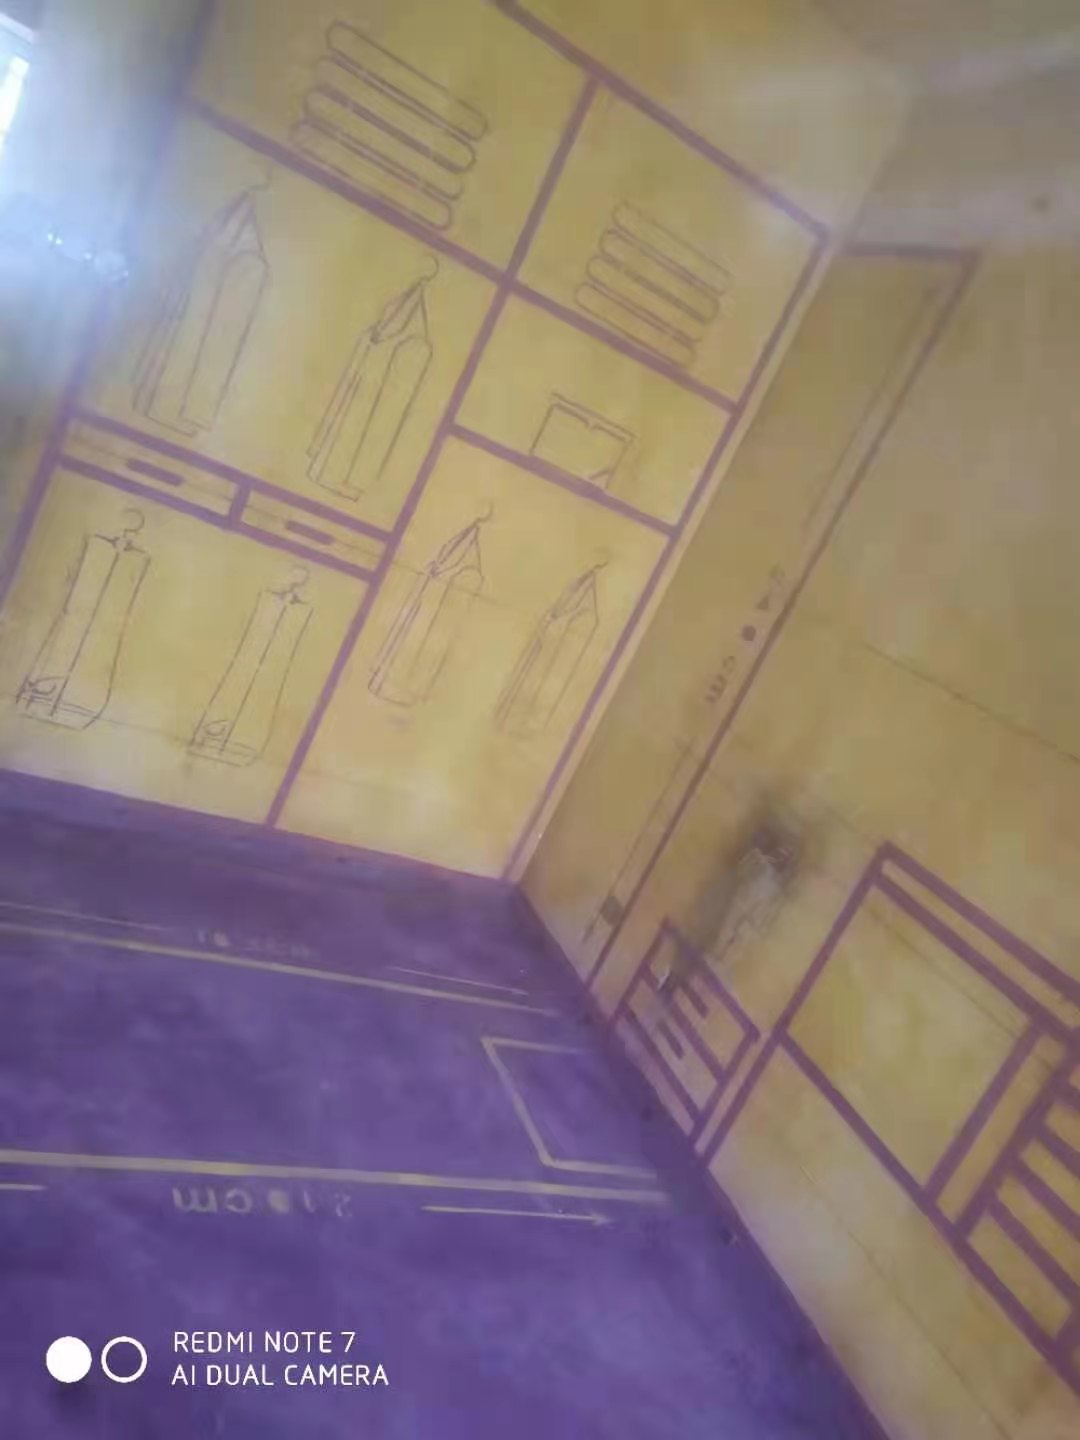 颐园世家-黄墙紫地/3D全景放样-山水装饰